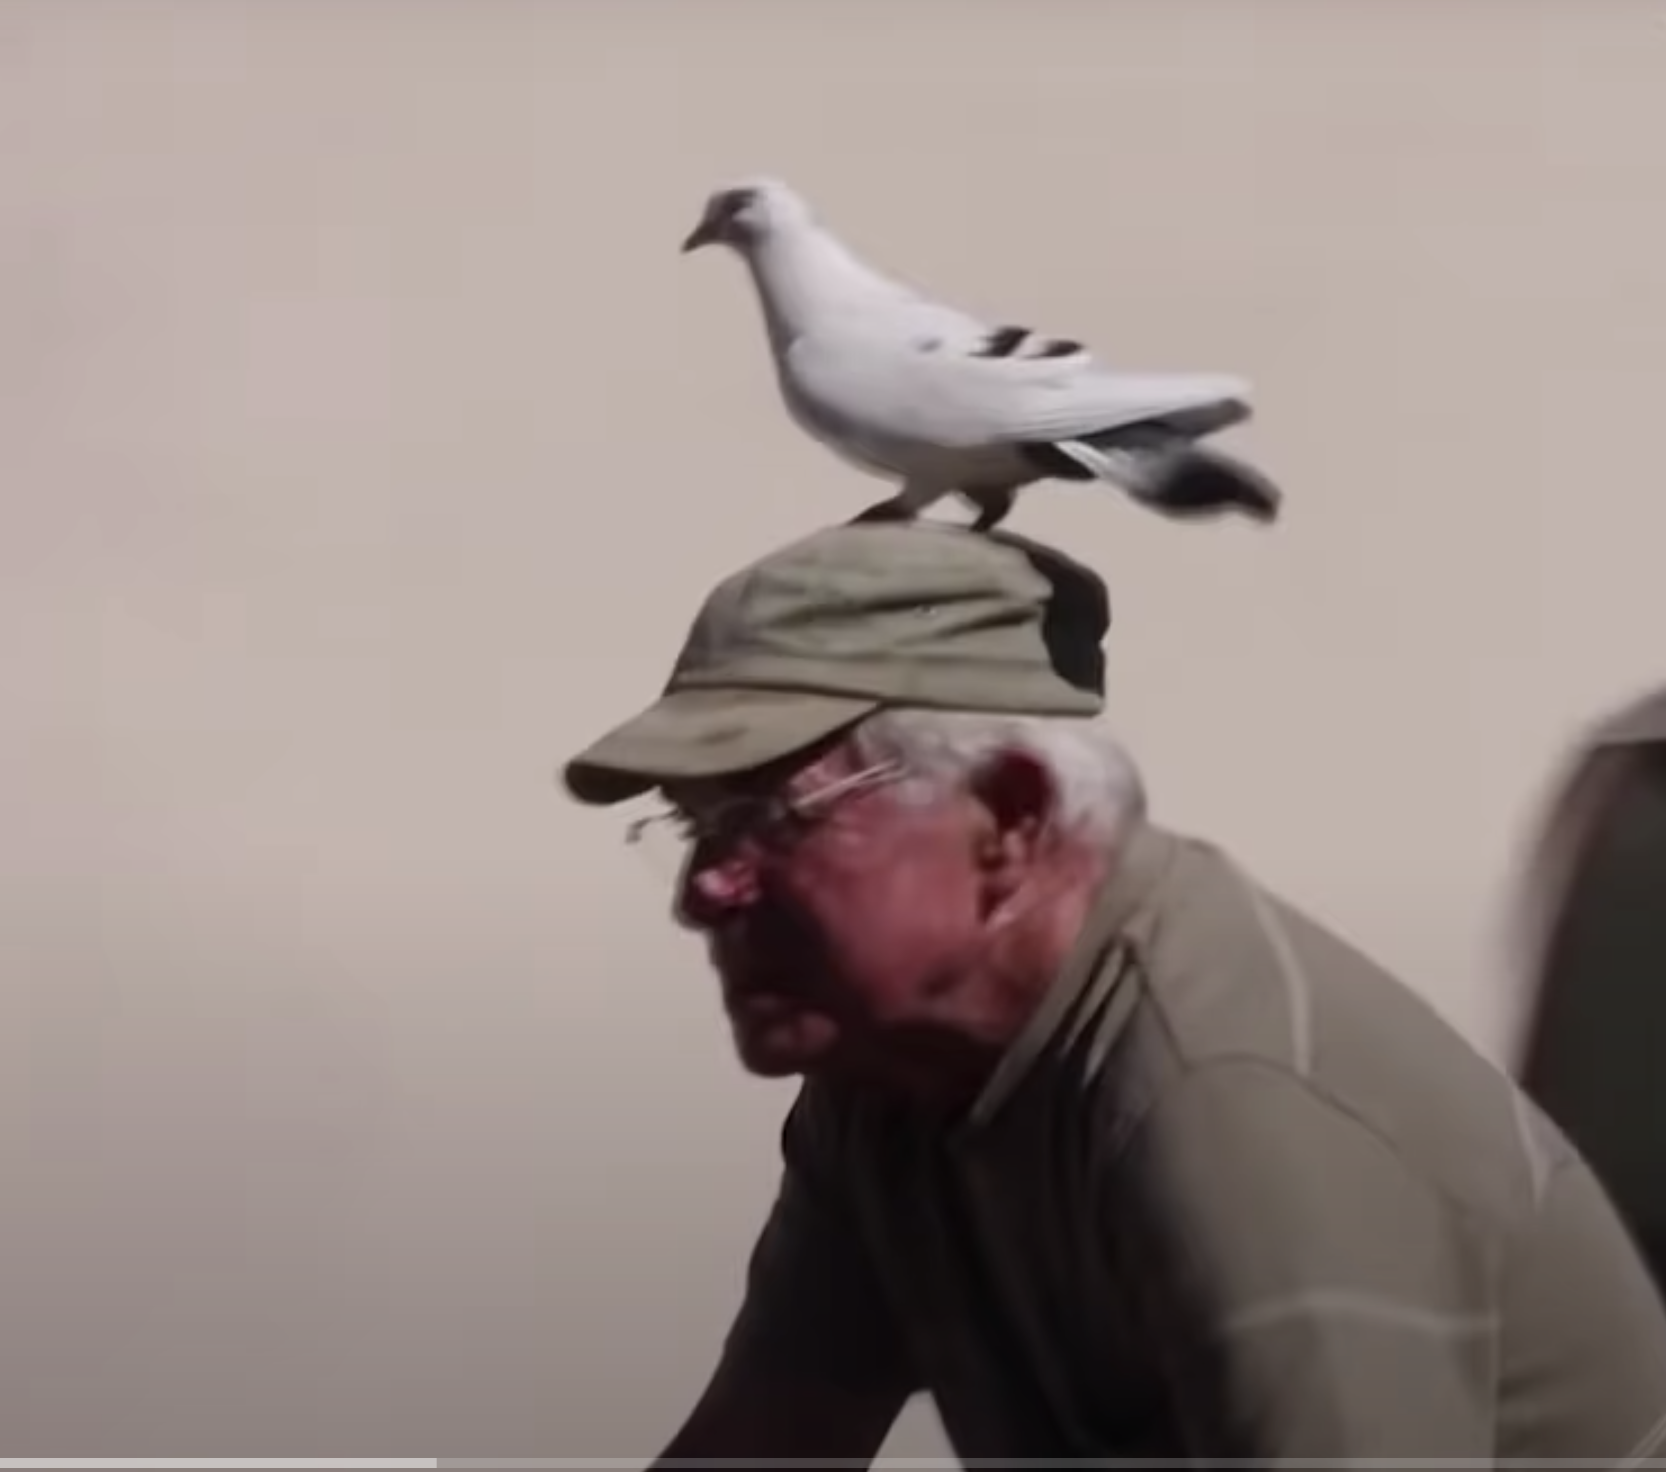 La entrañable amistad entre un jubilado y una paloma se convierte en viral. Captura de pantalla 